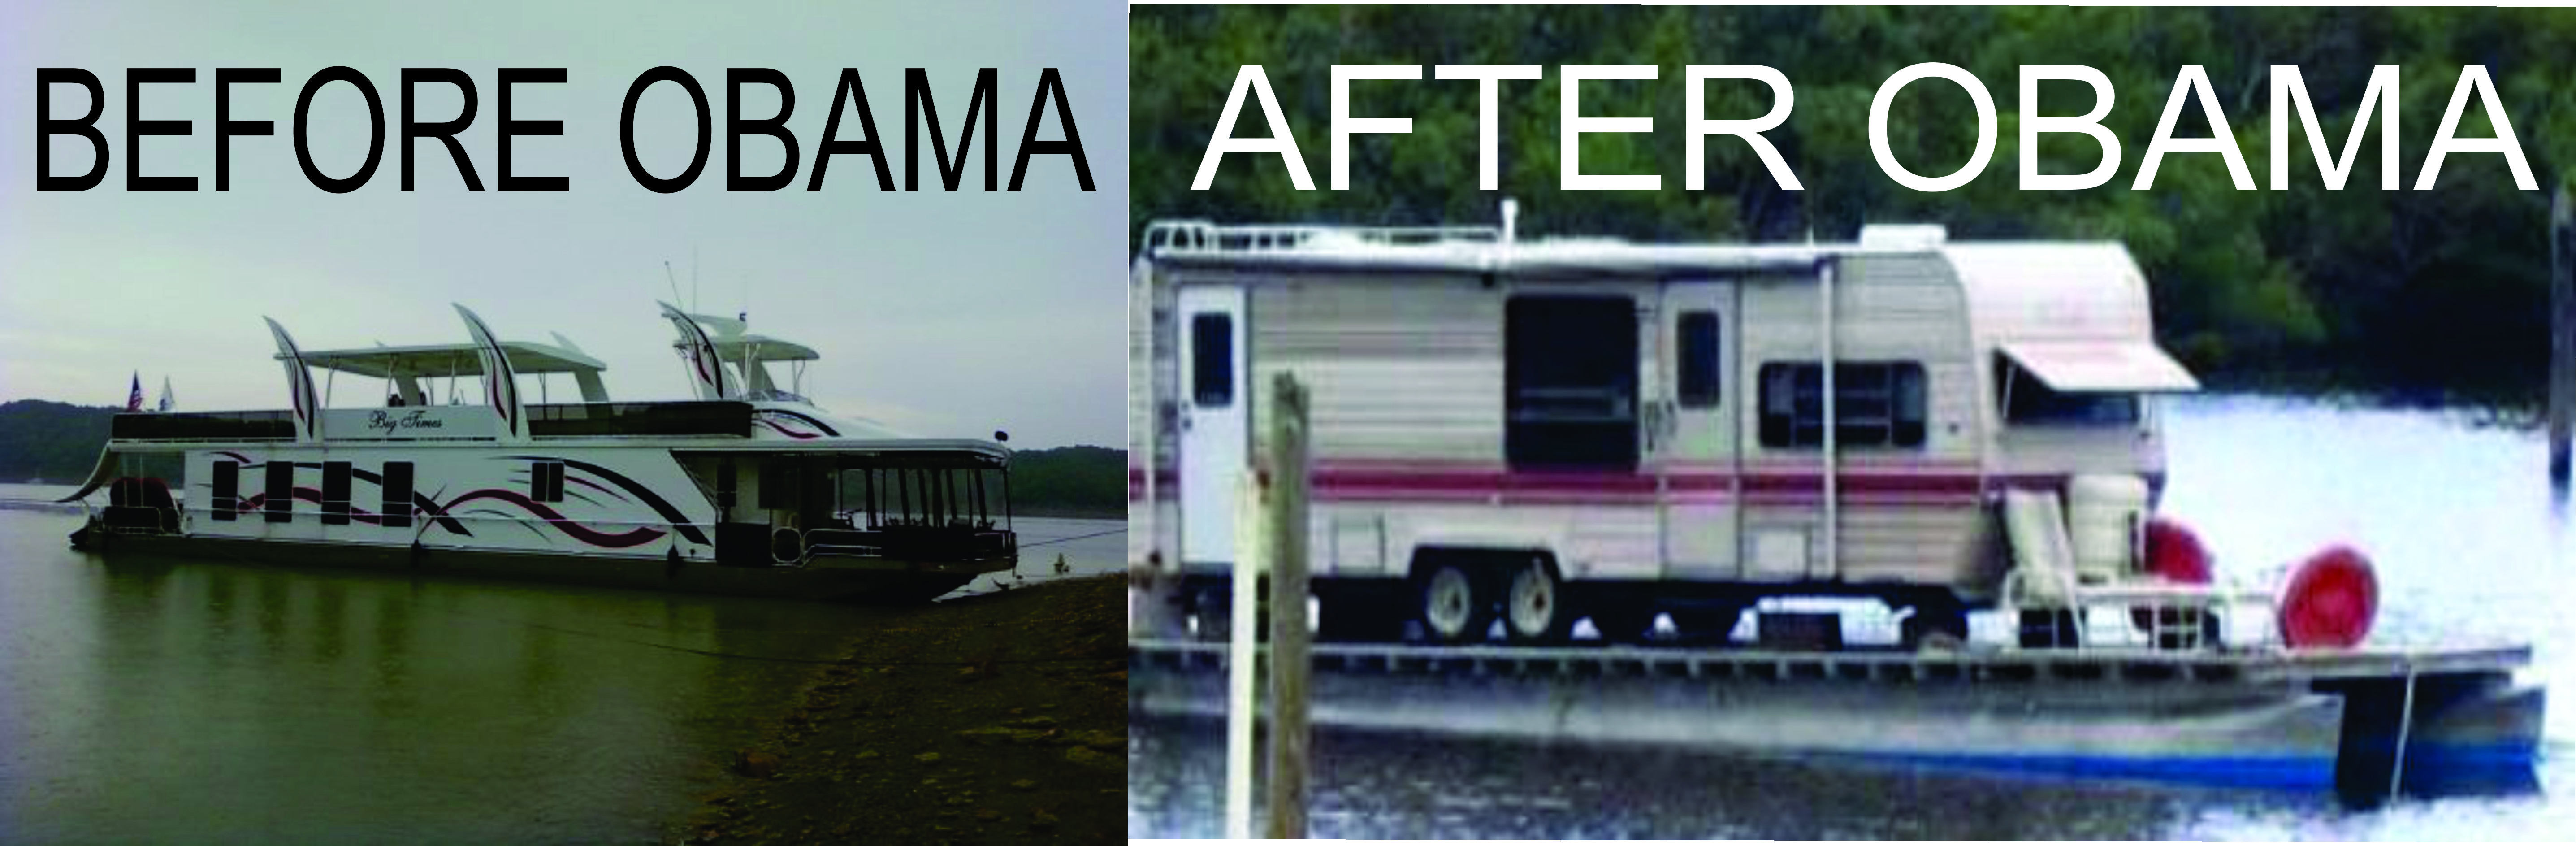 obamaboat.jpg